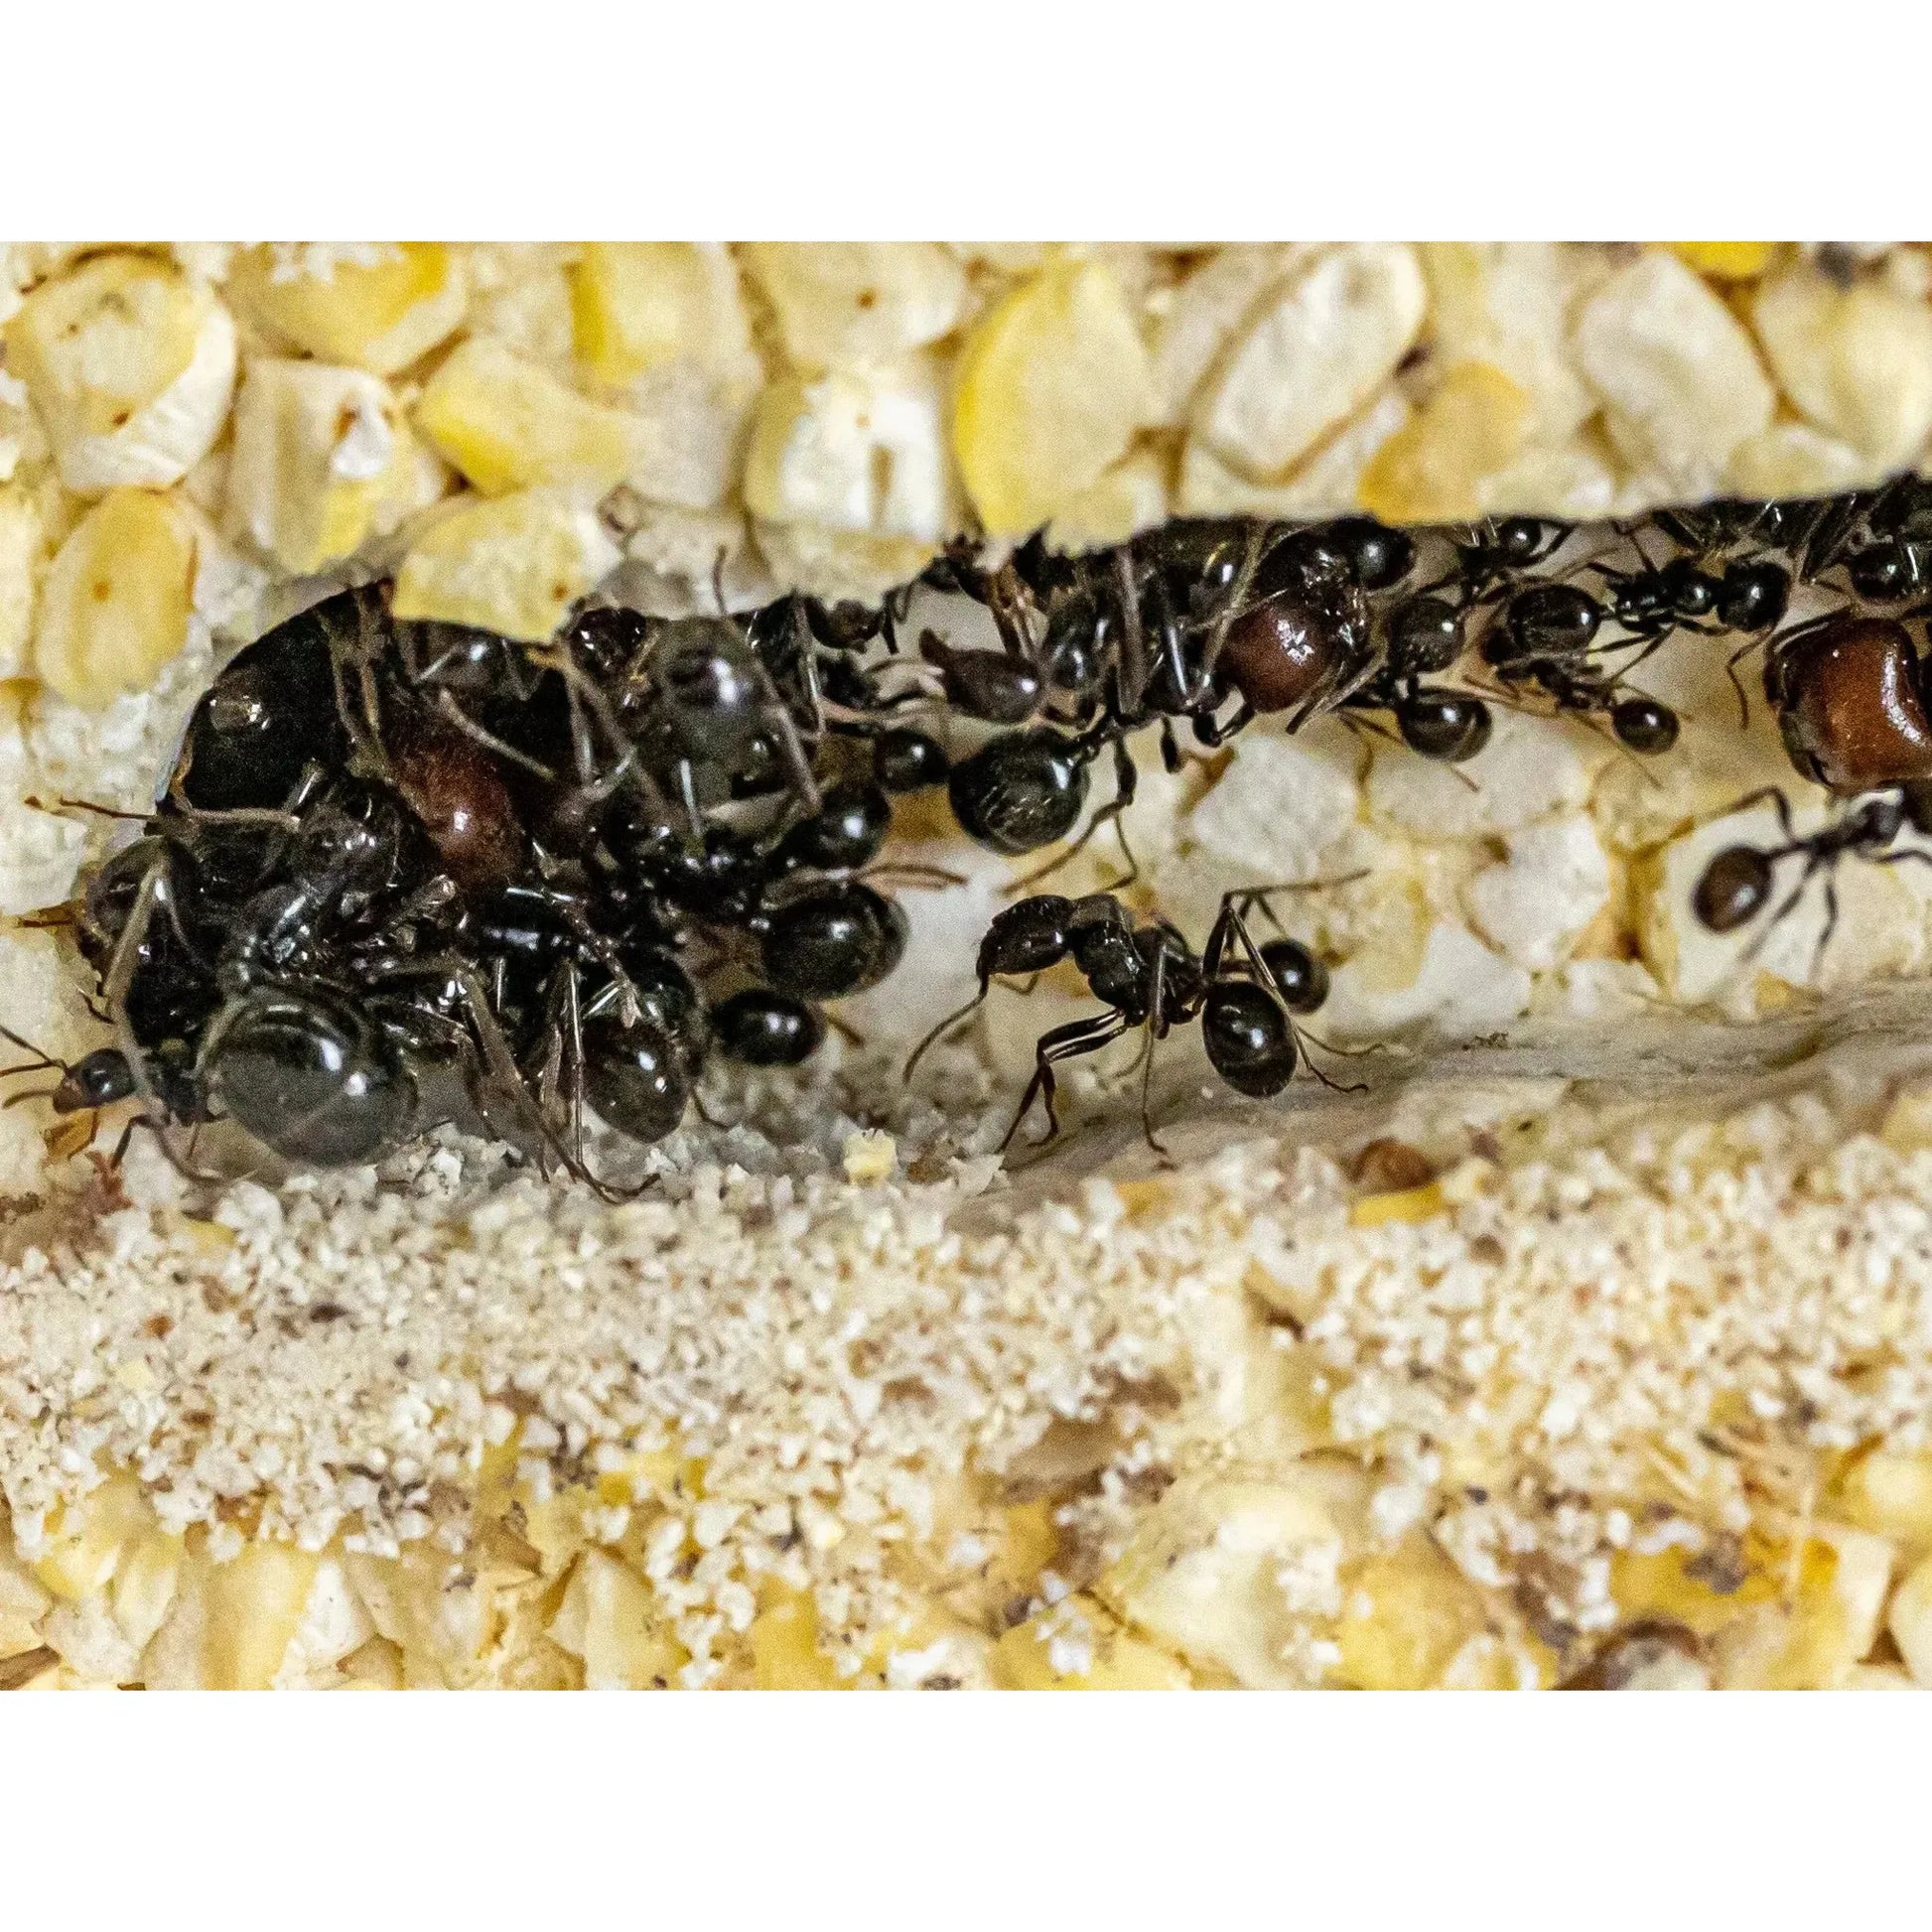 ANTCUBE Starter Set for Harvester Ants – L – Popcorn Antcube